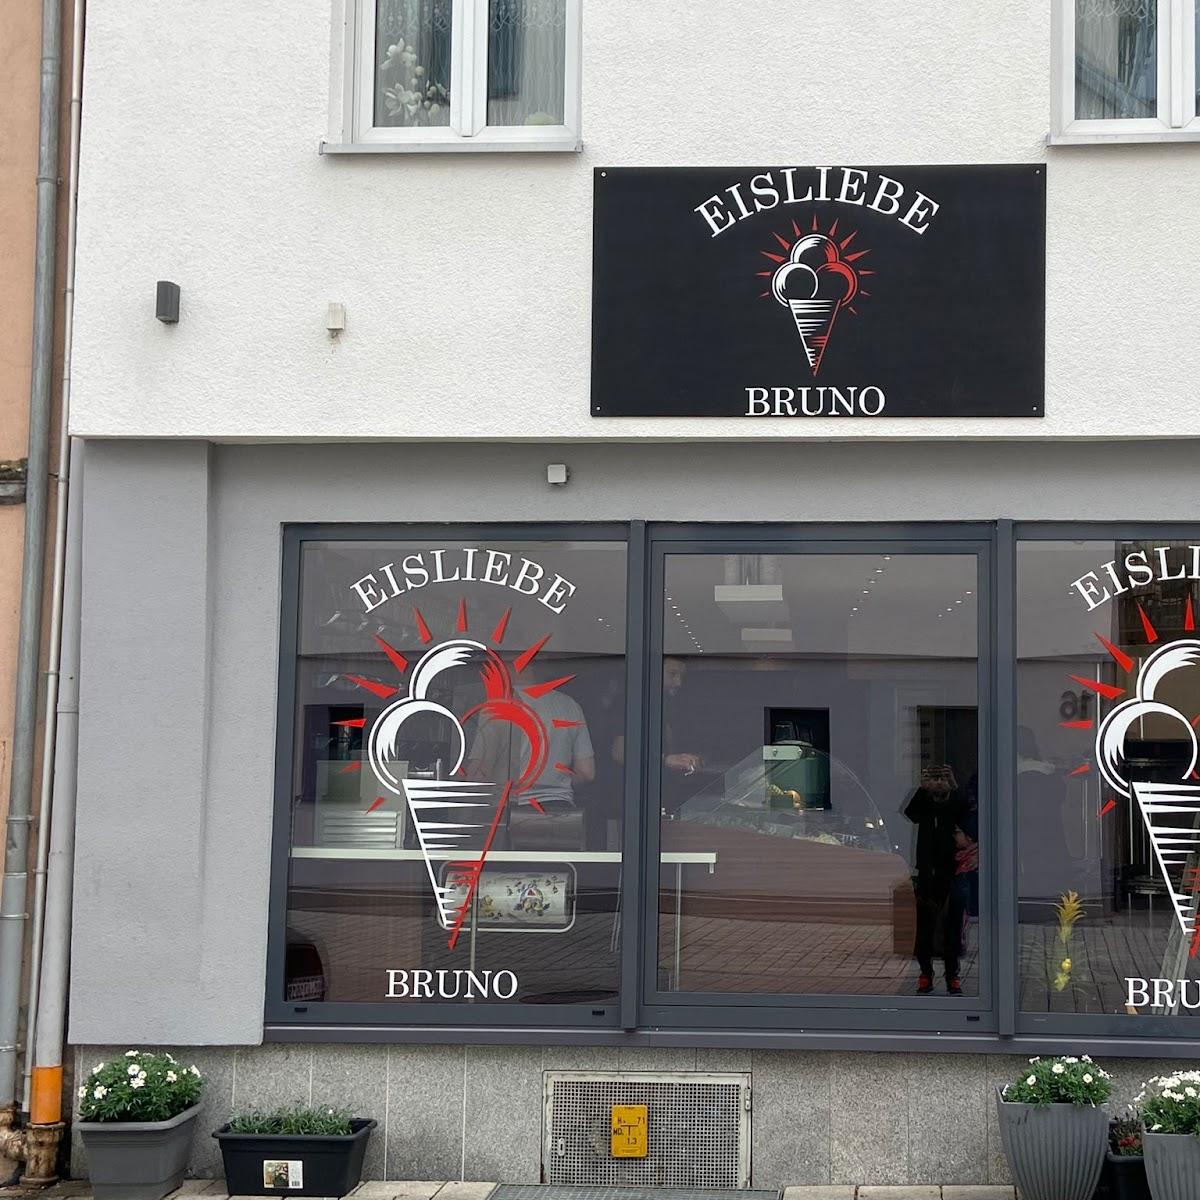 Restaurant "Eisliebe Bruno" in Munderkingen